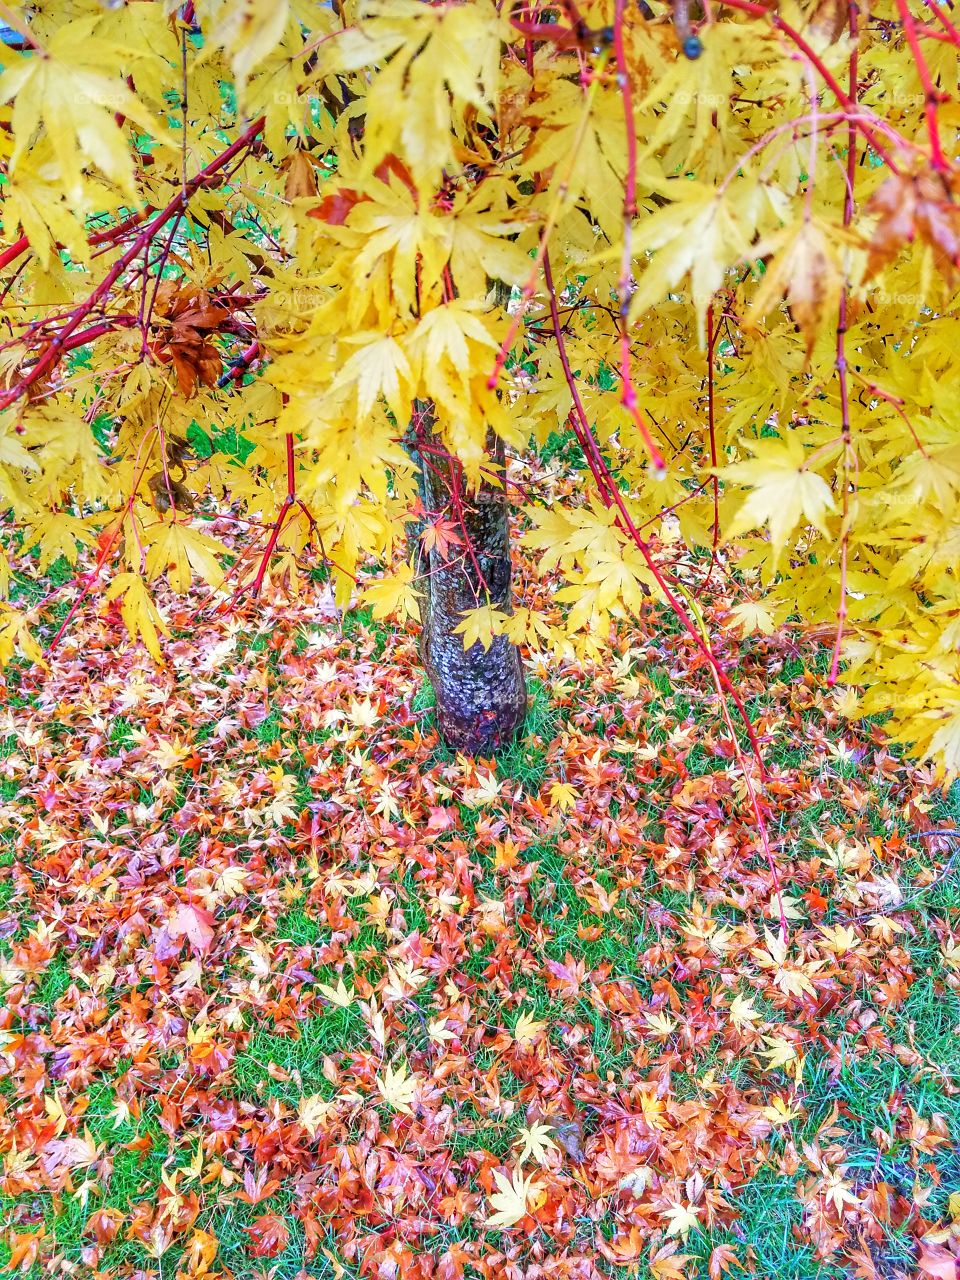 Maple Tree in Autumn